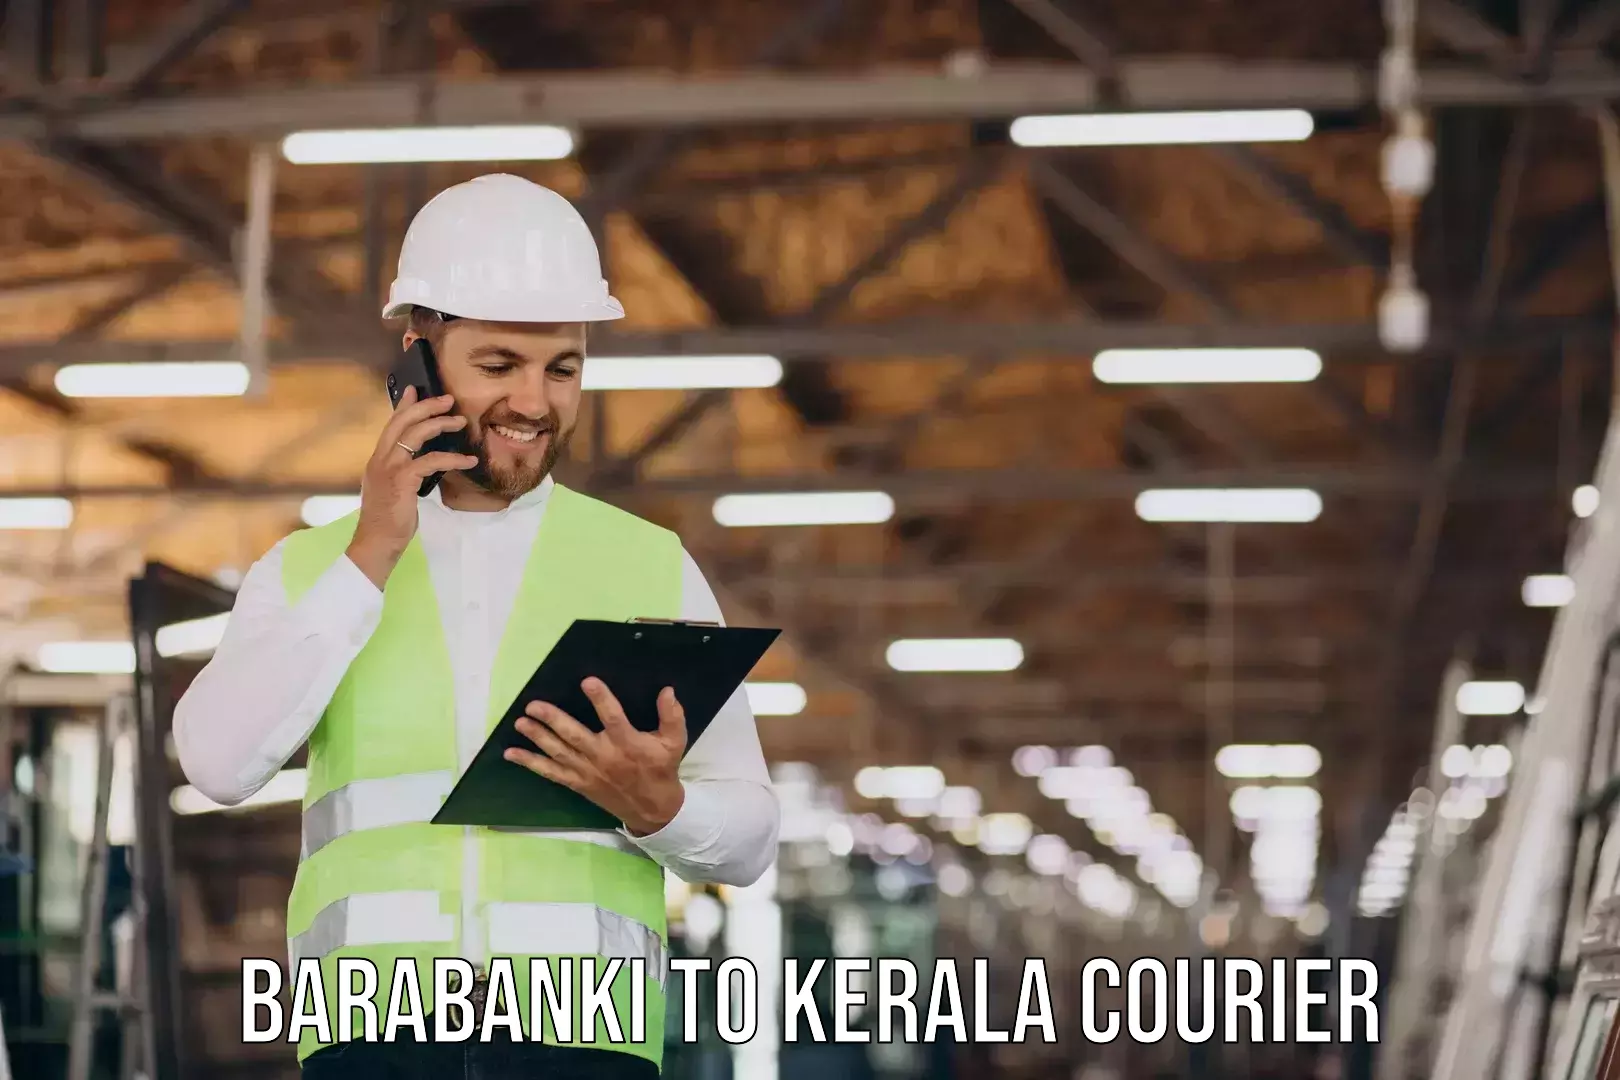 Quality moving company Barabanki to Kattappana